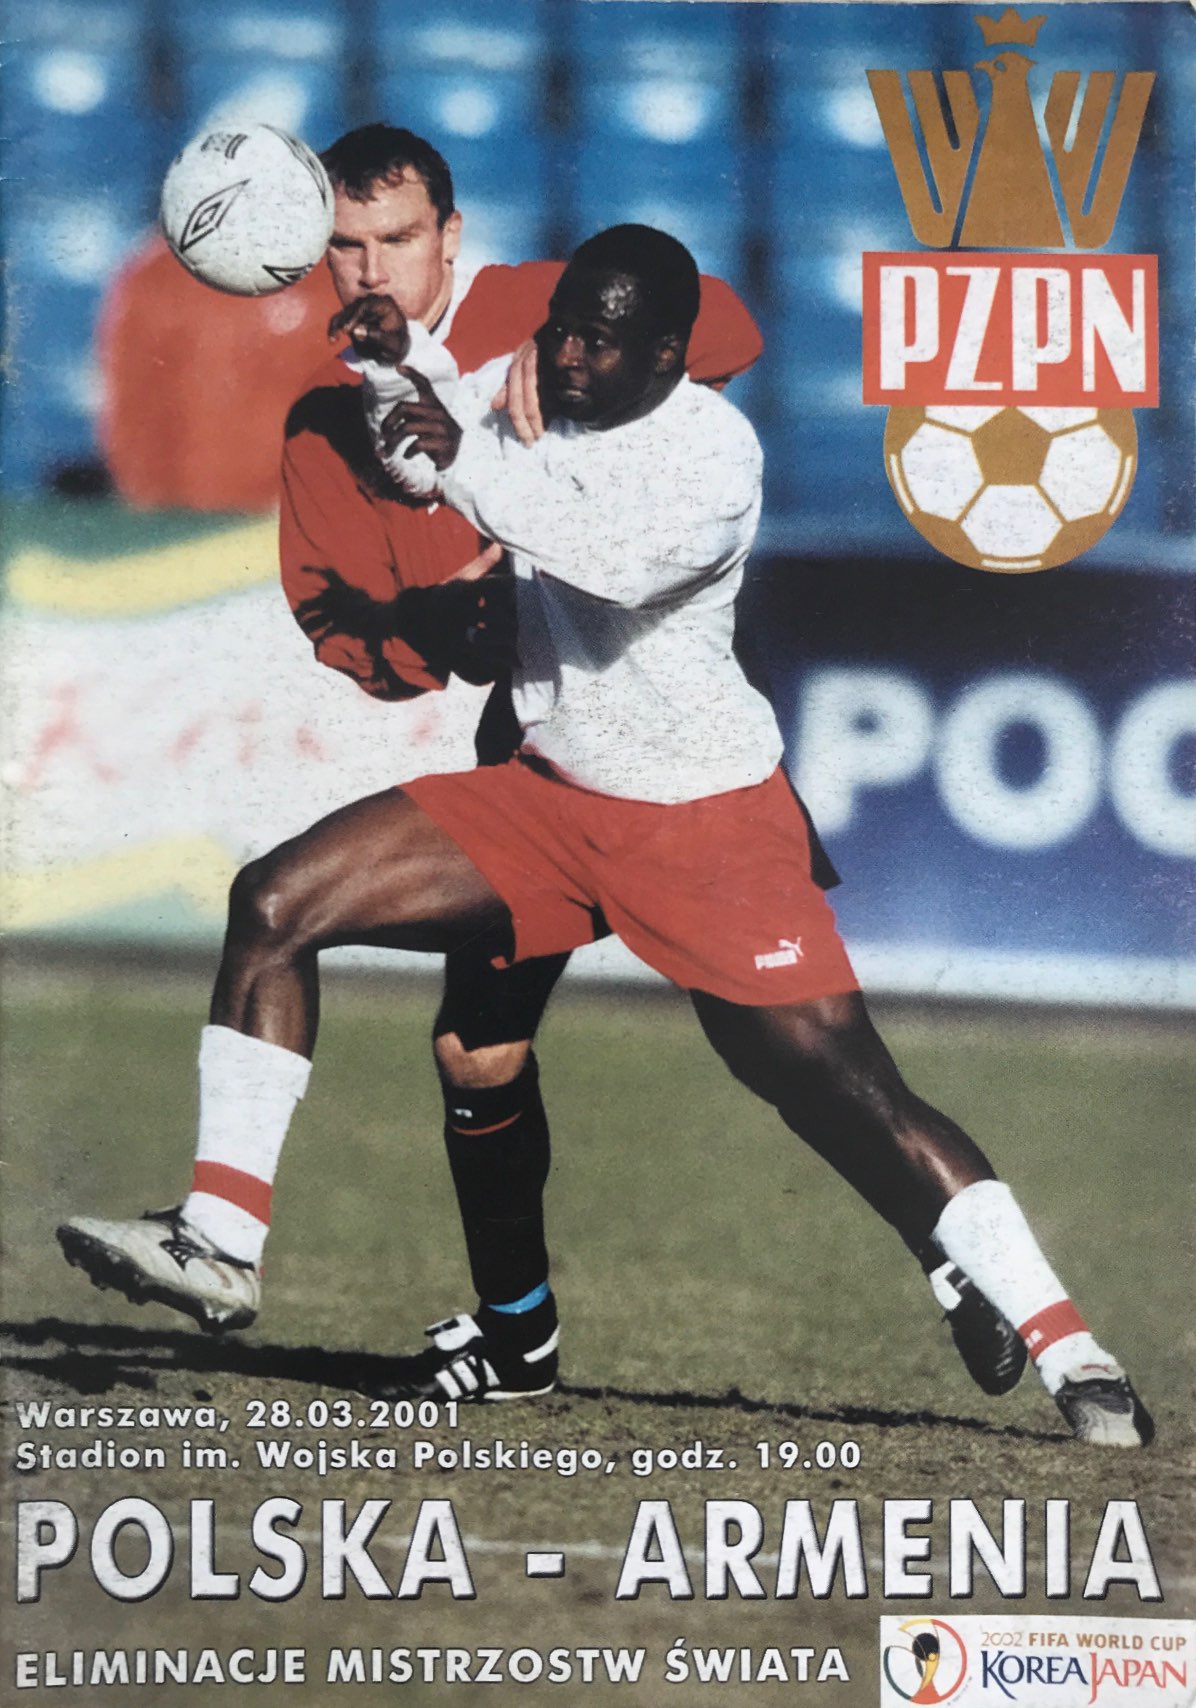 Program meczowy Polska - Armenia 4:0 (28.03.2001)